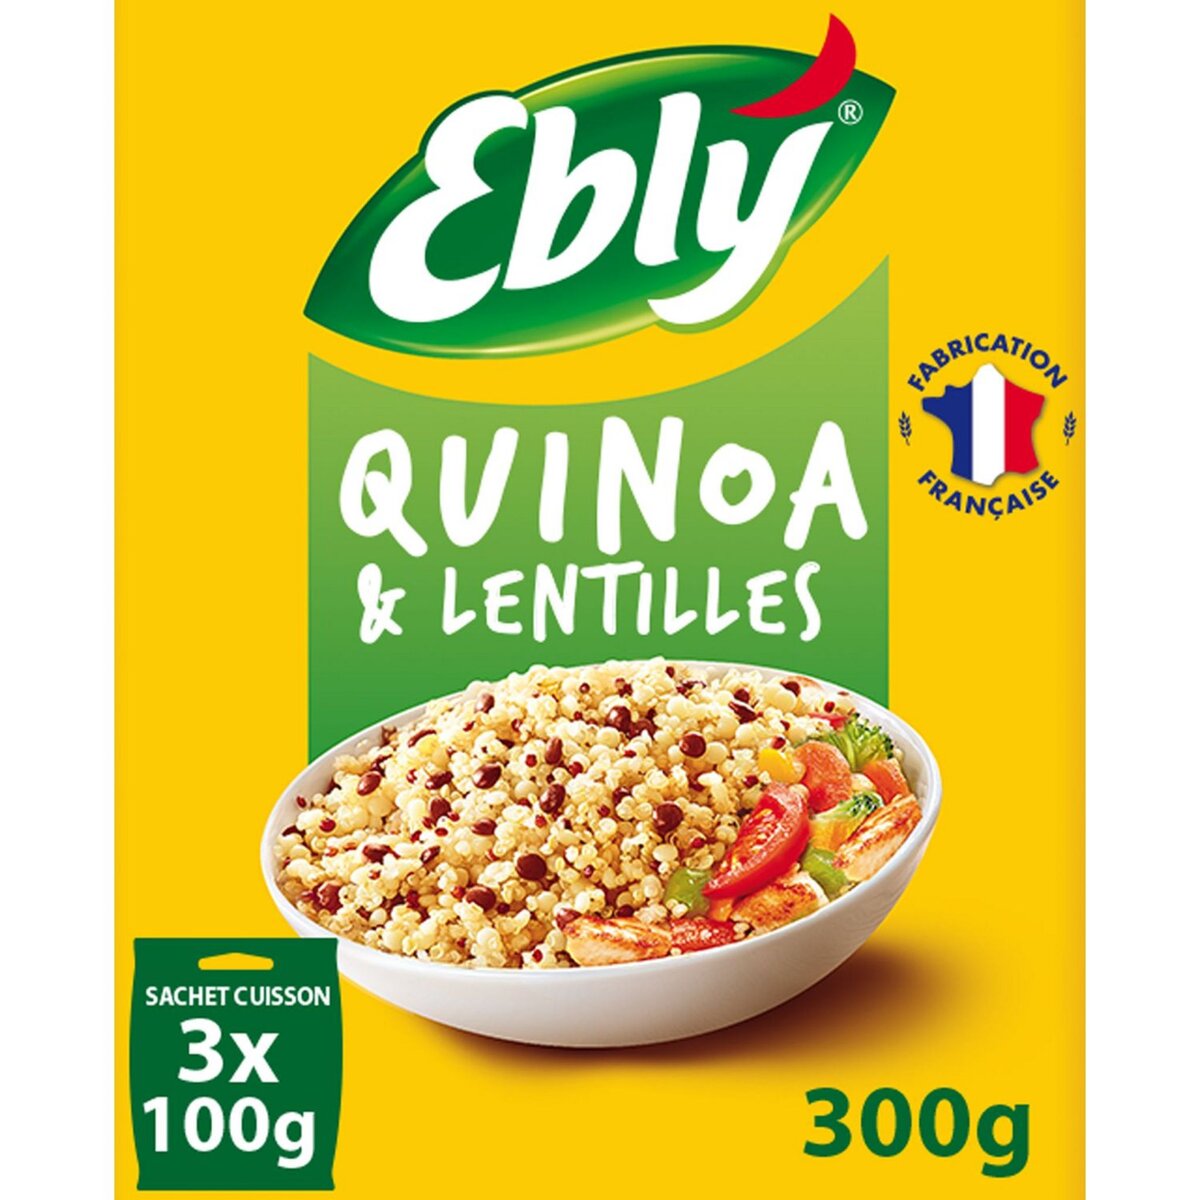 EBLY Quinoa et lentilles sachets cuisson, fabriqué en France 3x100g